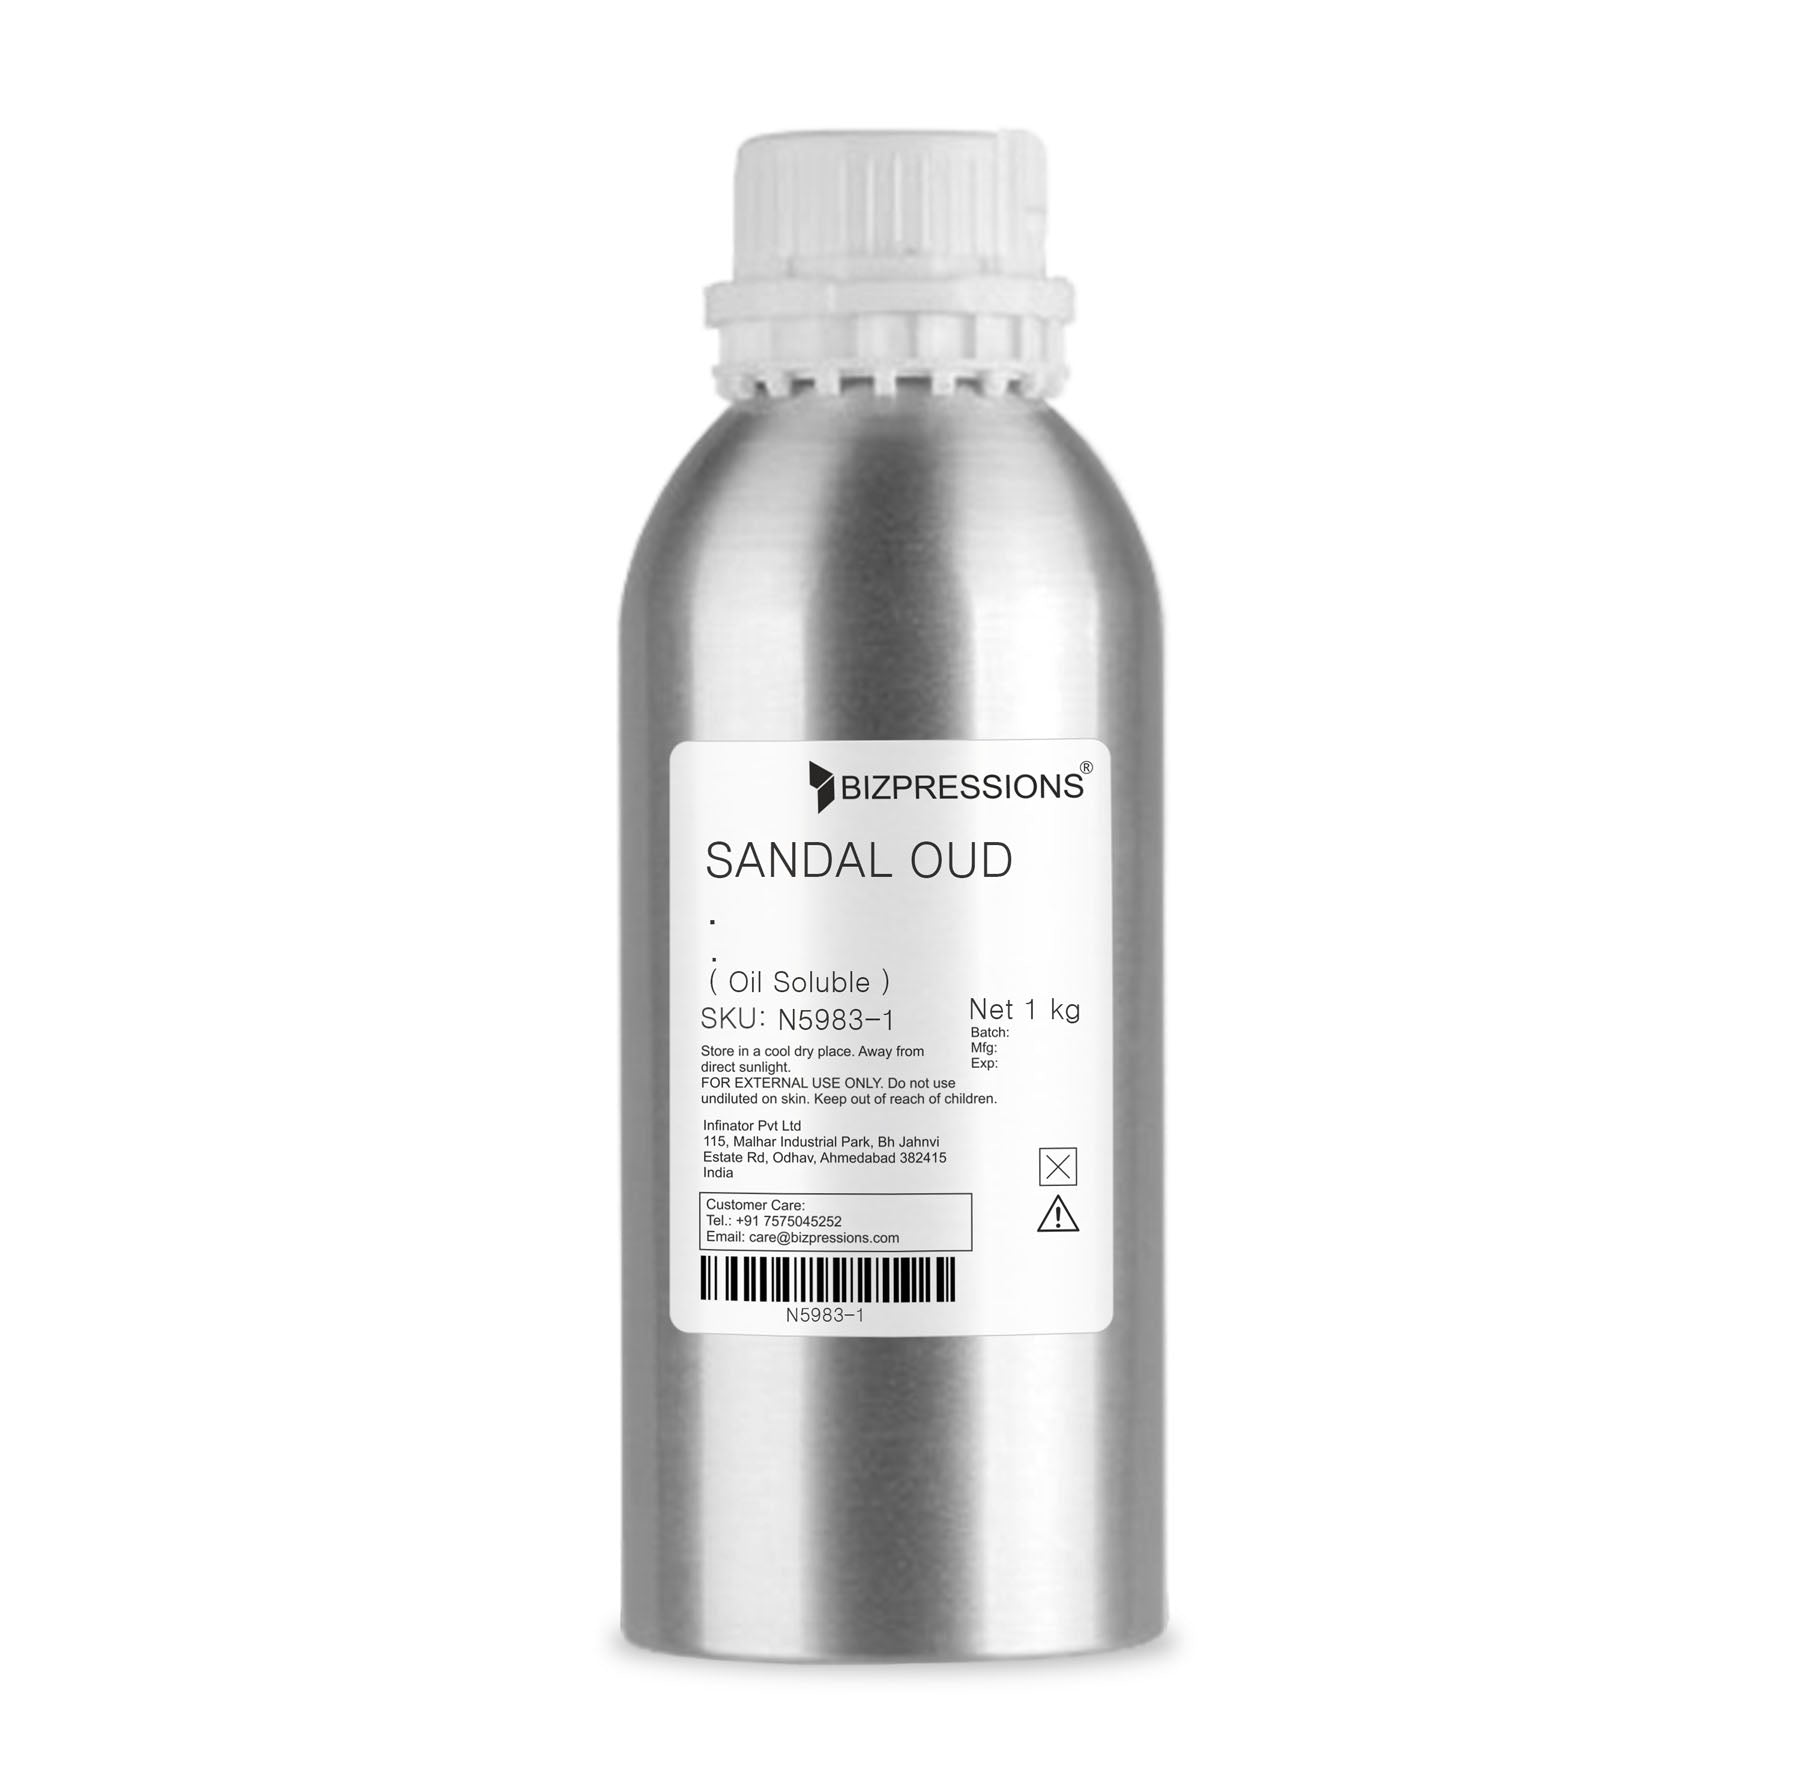 SANDAL OUD - Fragrance ( Oil Soluble ) - 1 kg